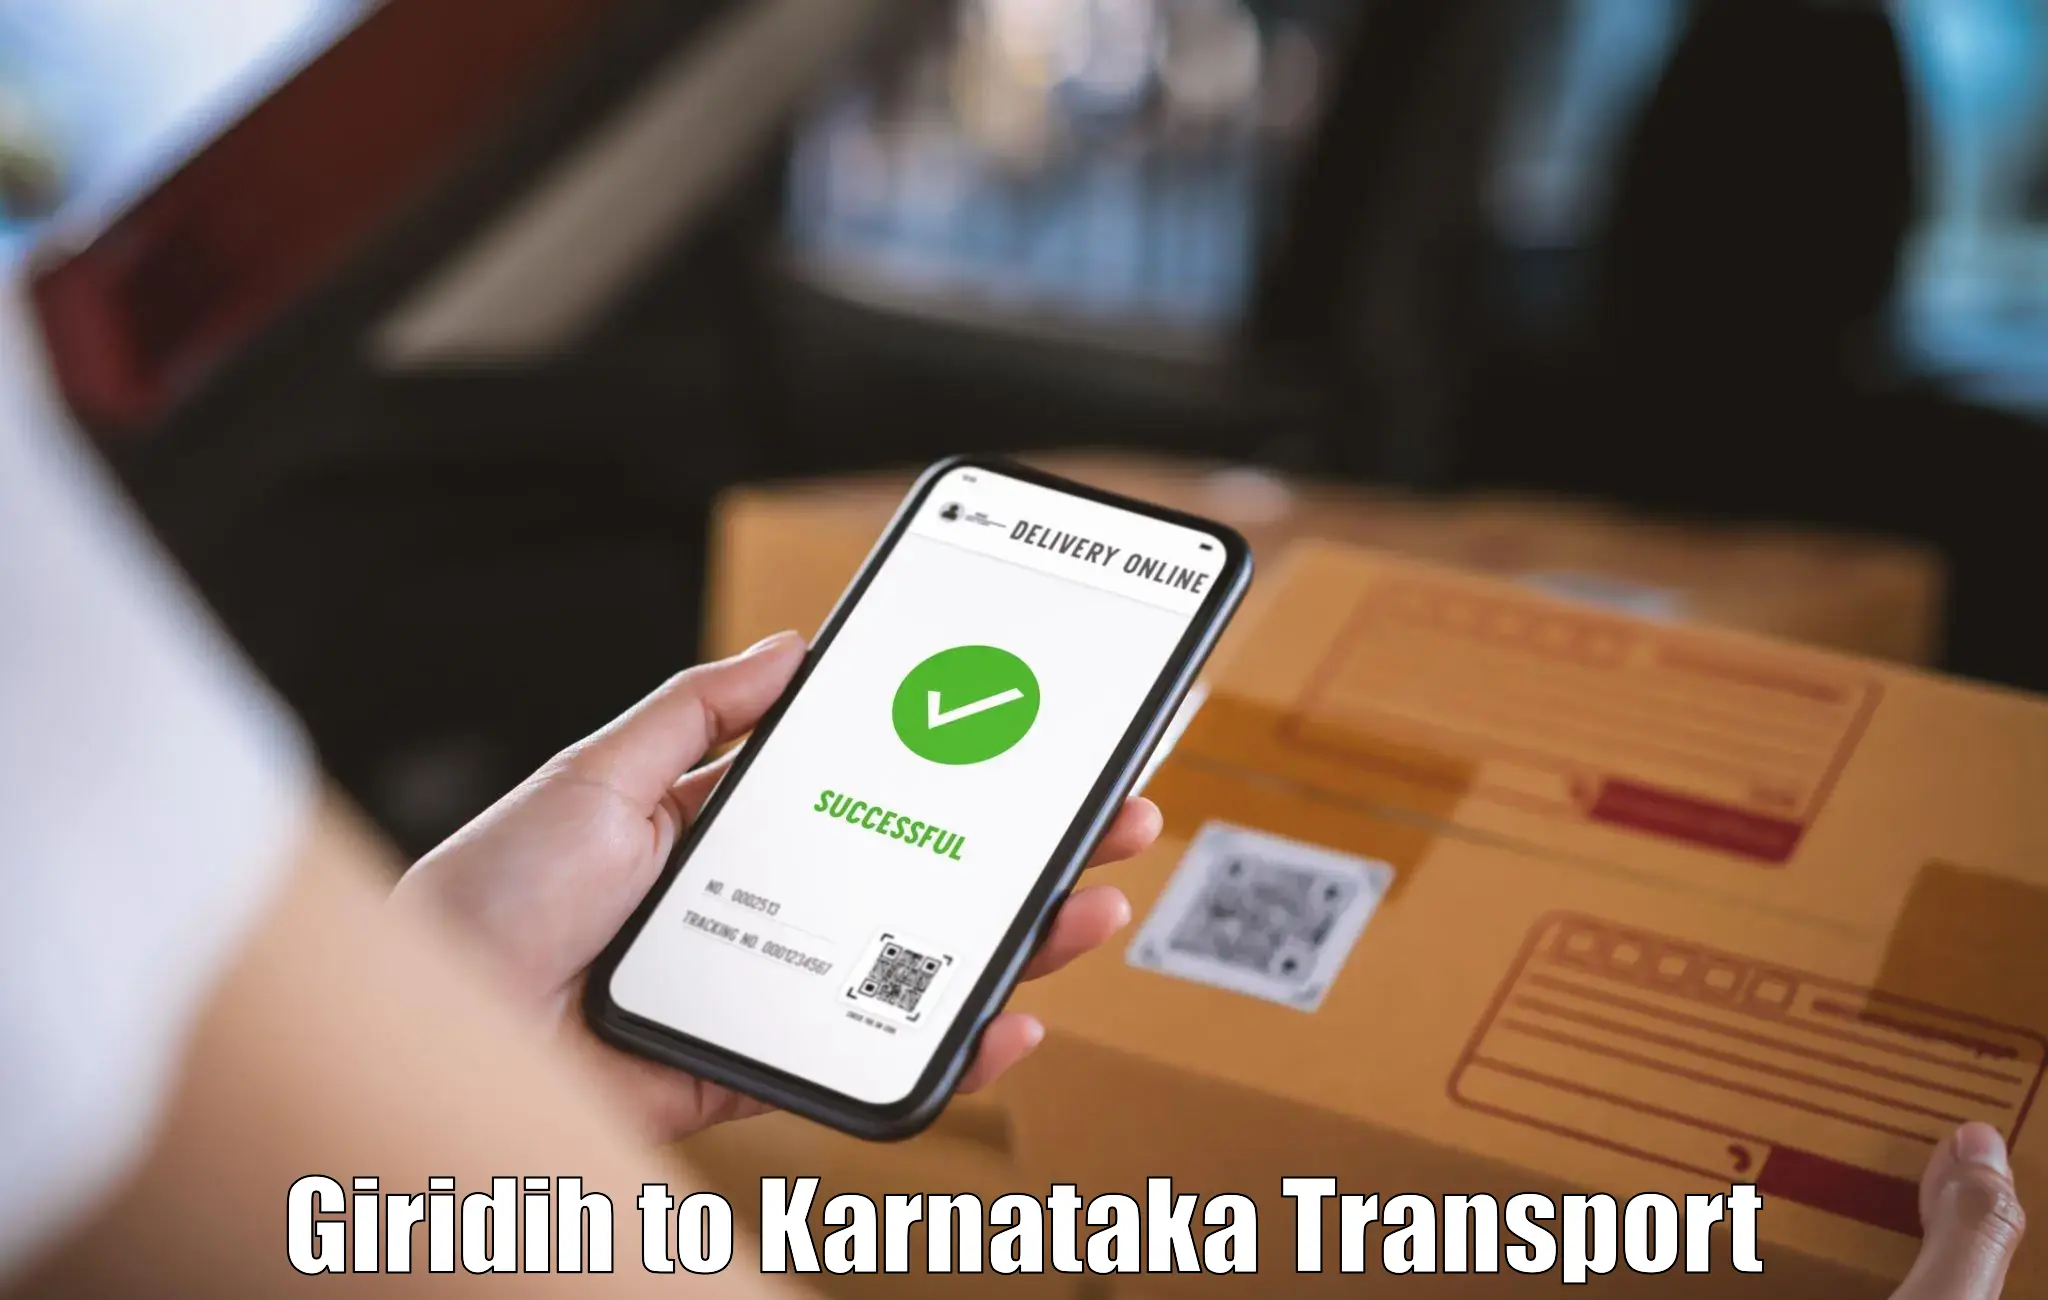 Daily parcel service transport Giridih to Bengaluru